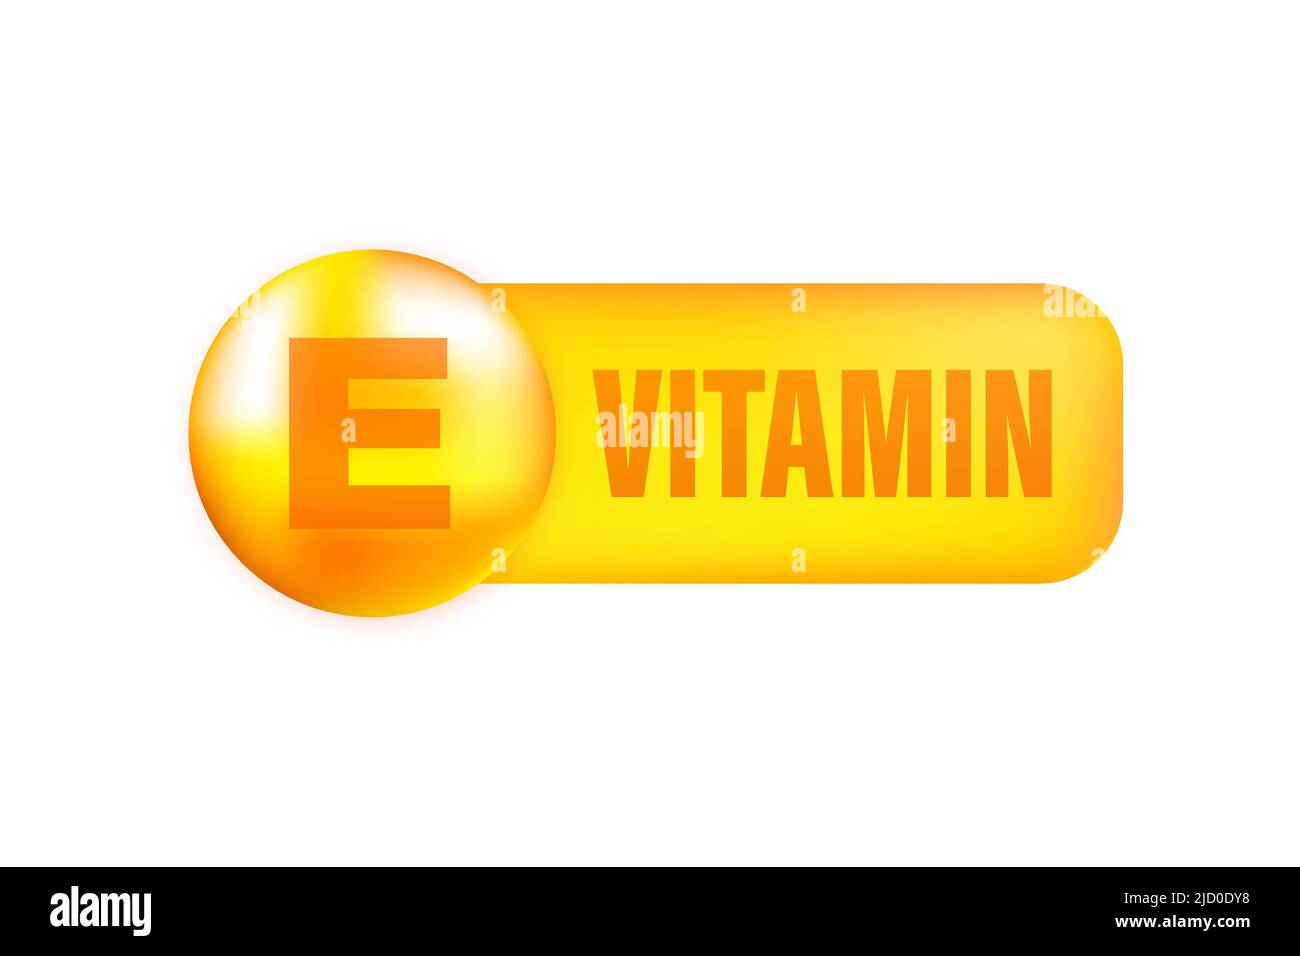 Vitamine E avec chute réaliste sur fond gris. Particules de vitamines au milieu. Illustration vectorielle. Illustration de Vecteur